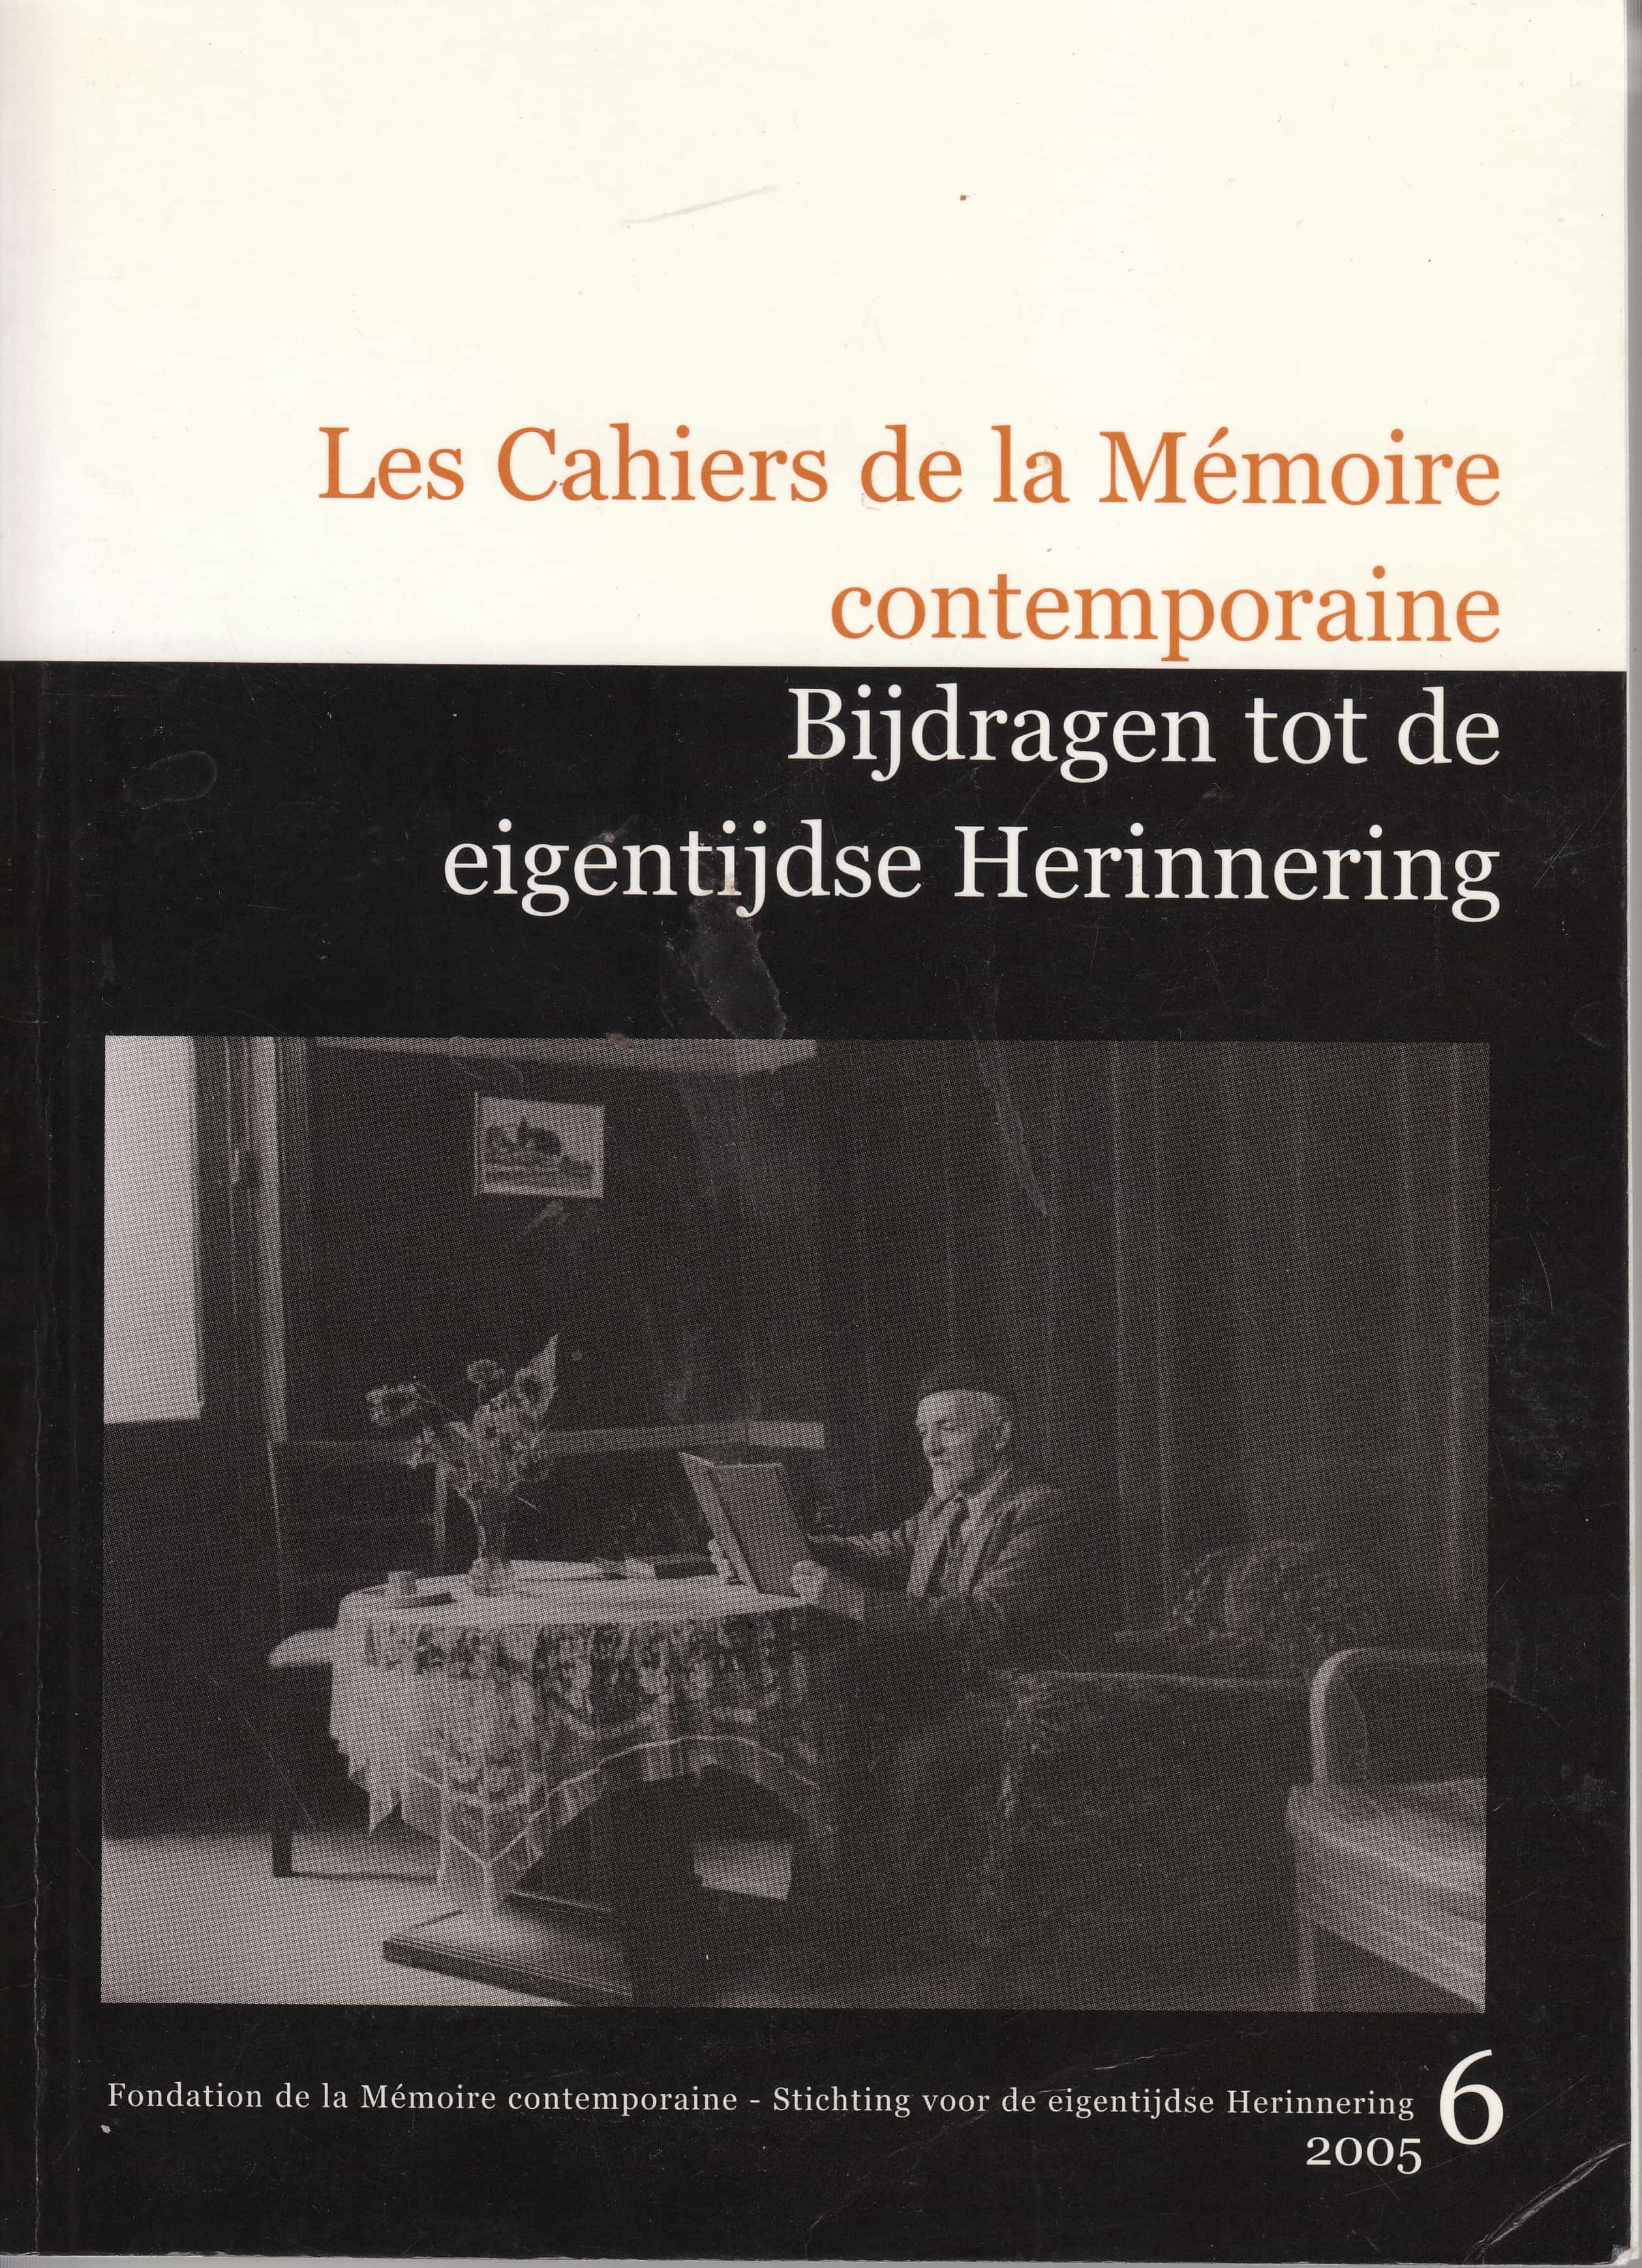 Les Cahiers de la Mémoire Contemporaine 6-2005